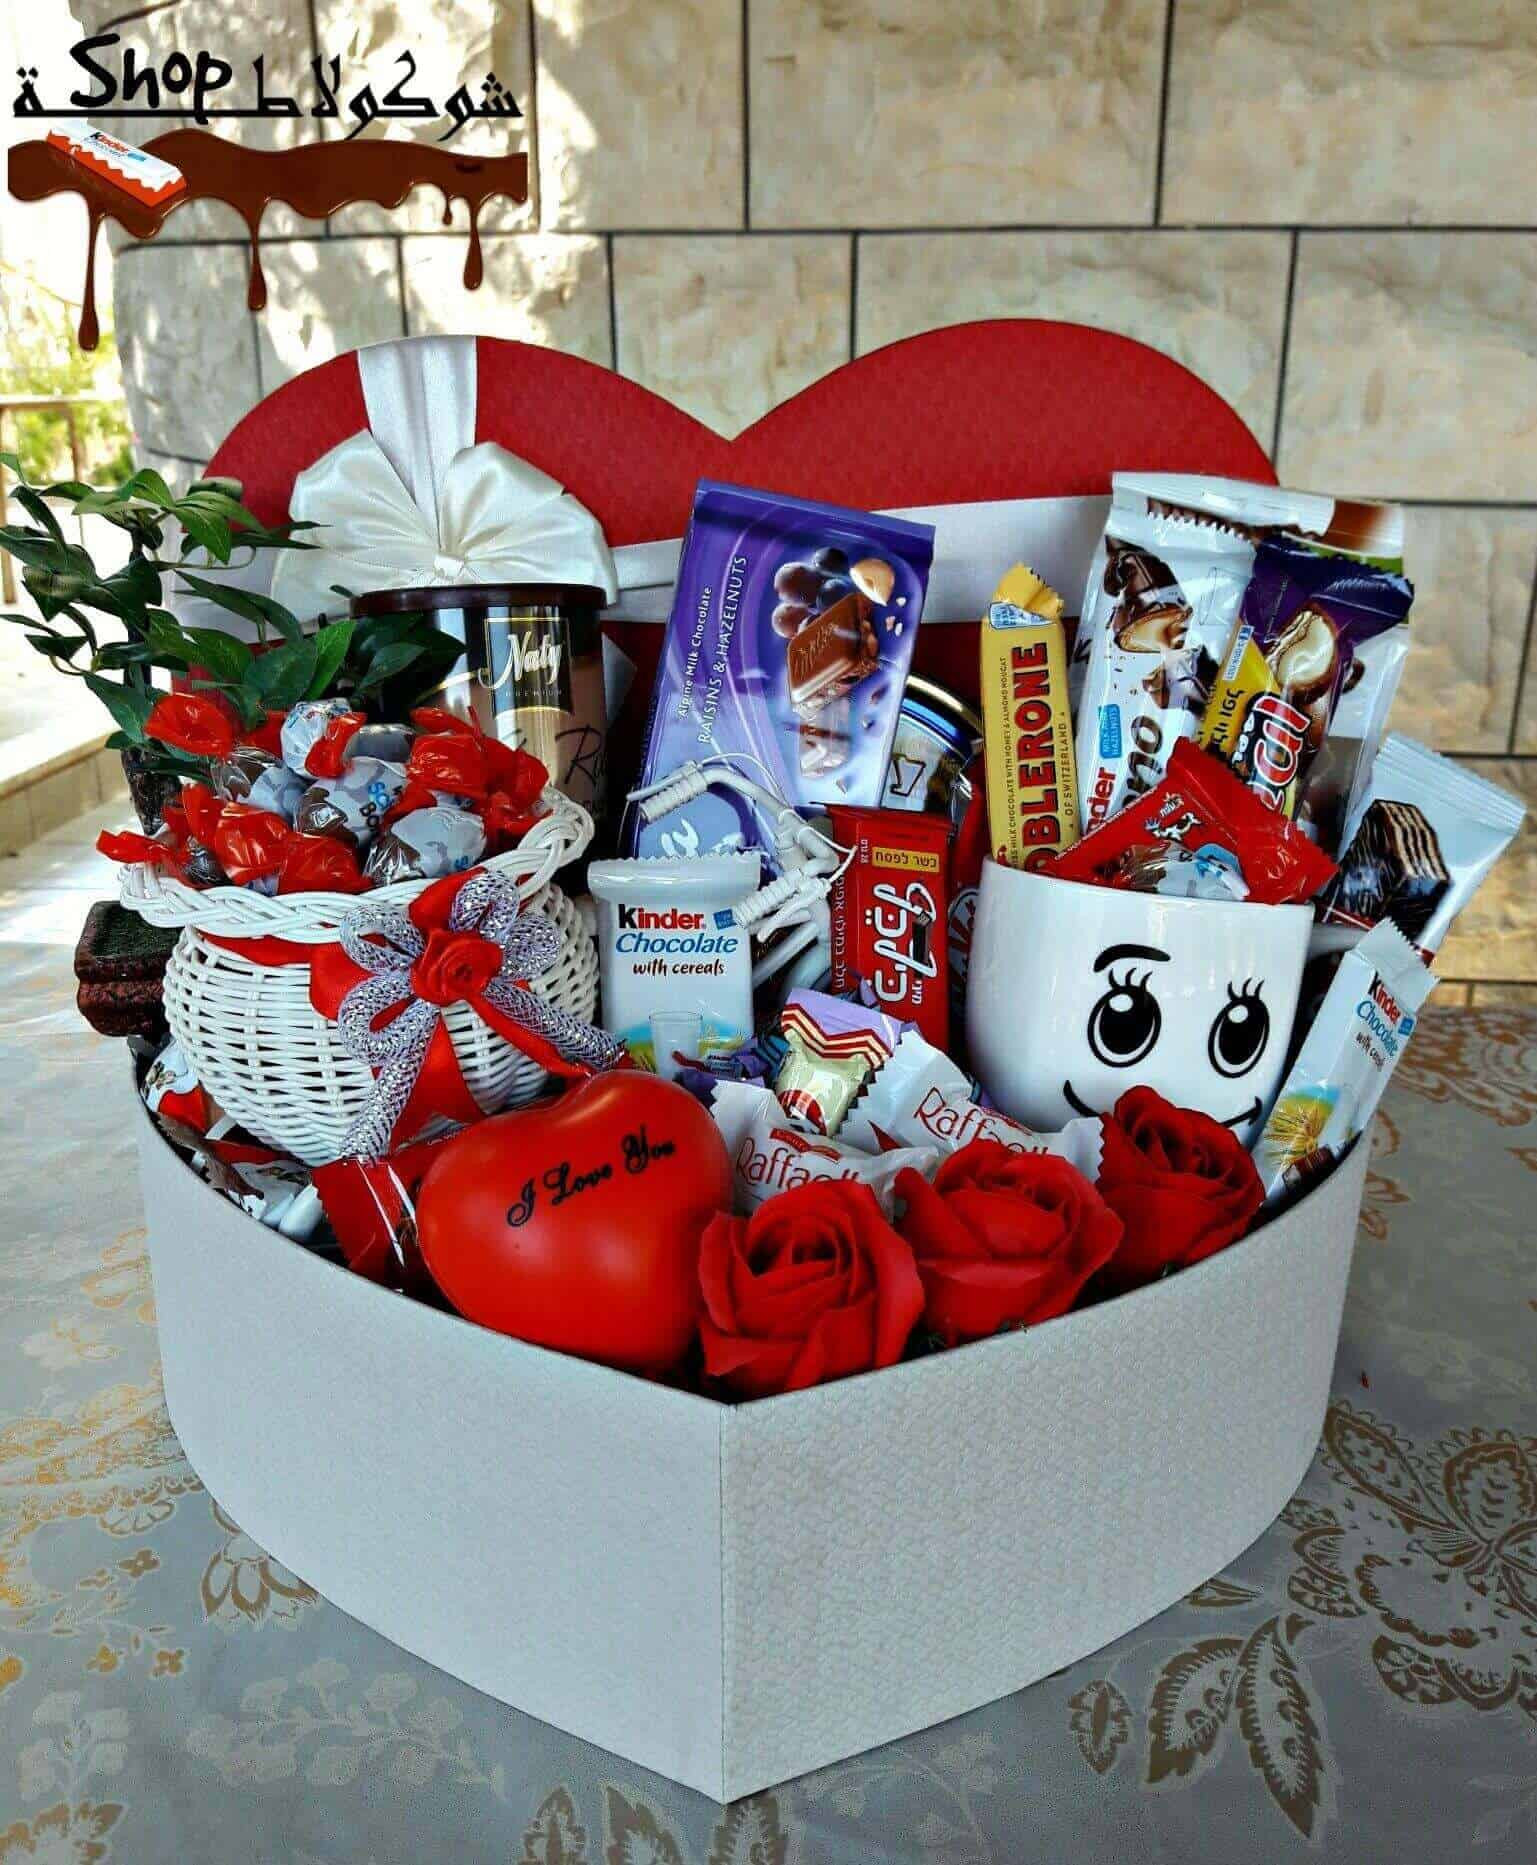 Valentine'S Day Gift Basket Ideas
 Best Valentine s Day Gift Baskets Boxes & Gift Sets Ideas